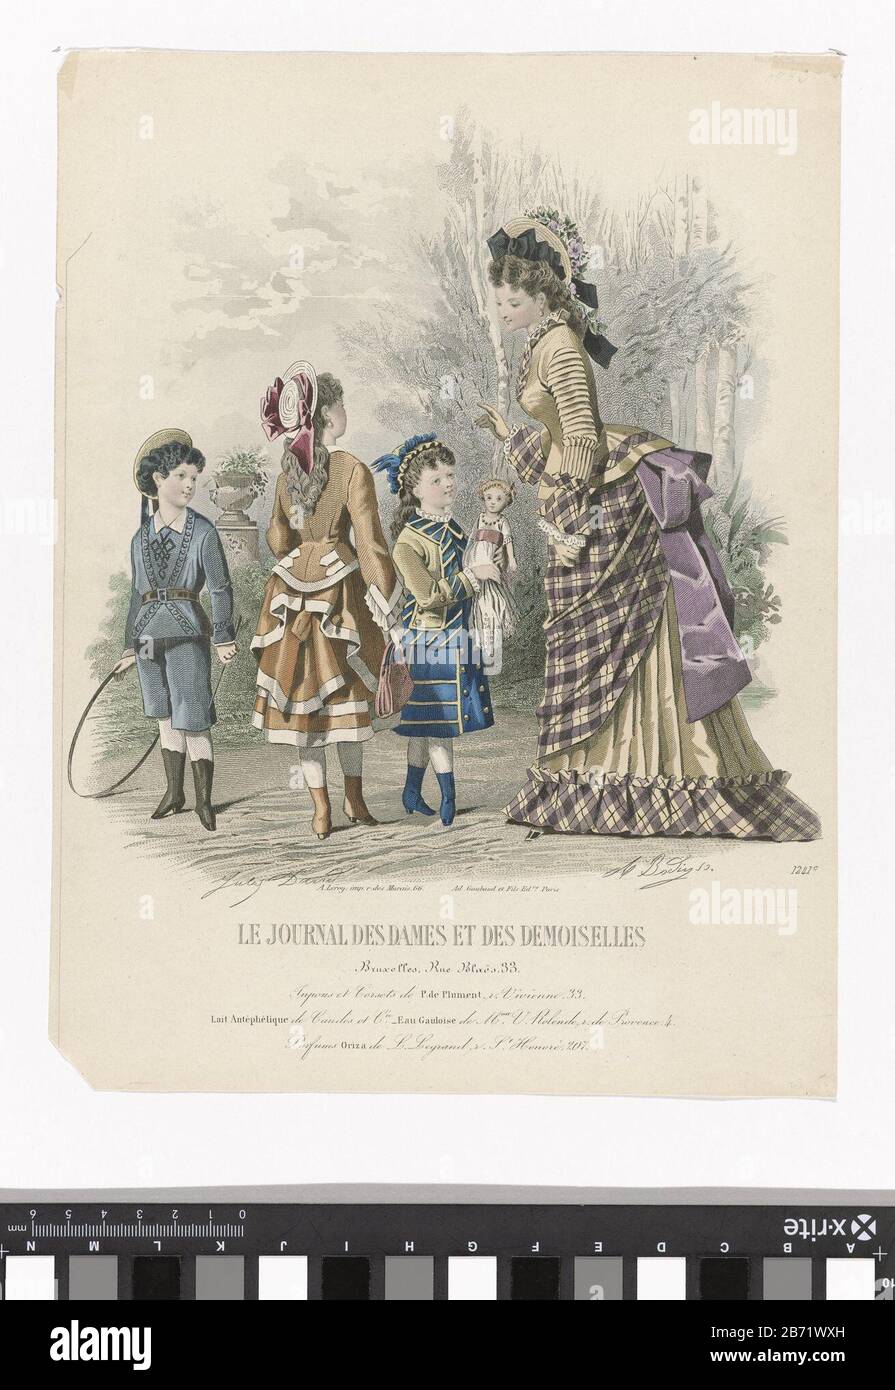 Le Journal des Dames et des Demoiselles, 1875, Nr. 1241c Jupons et Corsets Vrouw met drie kinderen buiten, zij is gekleed in een japon uit geruite en gele stof met tournure en draag een hoed. De jongen ist in een matrozenpak gekleed. De twee meisjes dragen japonnen met jasjes. De rok van het oudere meisje is aan de achterkant opgetrokken. Het jongere meisje heeft een rok met knopen en strepen op het jasje. Onder de voorstelling enkele regels reclametekst voor verschillende producten. Prent uit het modetijdschrift Journal des Dames et des Demoiselles (1841-1902). Hersteller: Hersteller: A. Bo Stockfoto